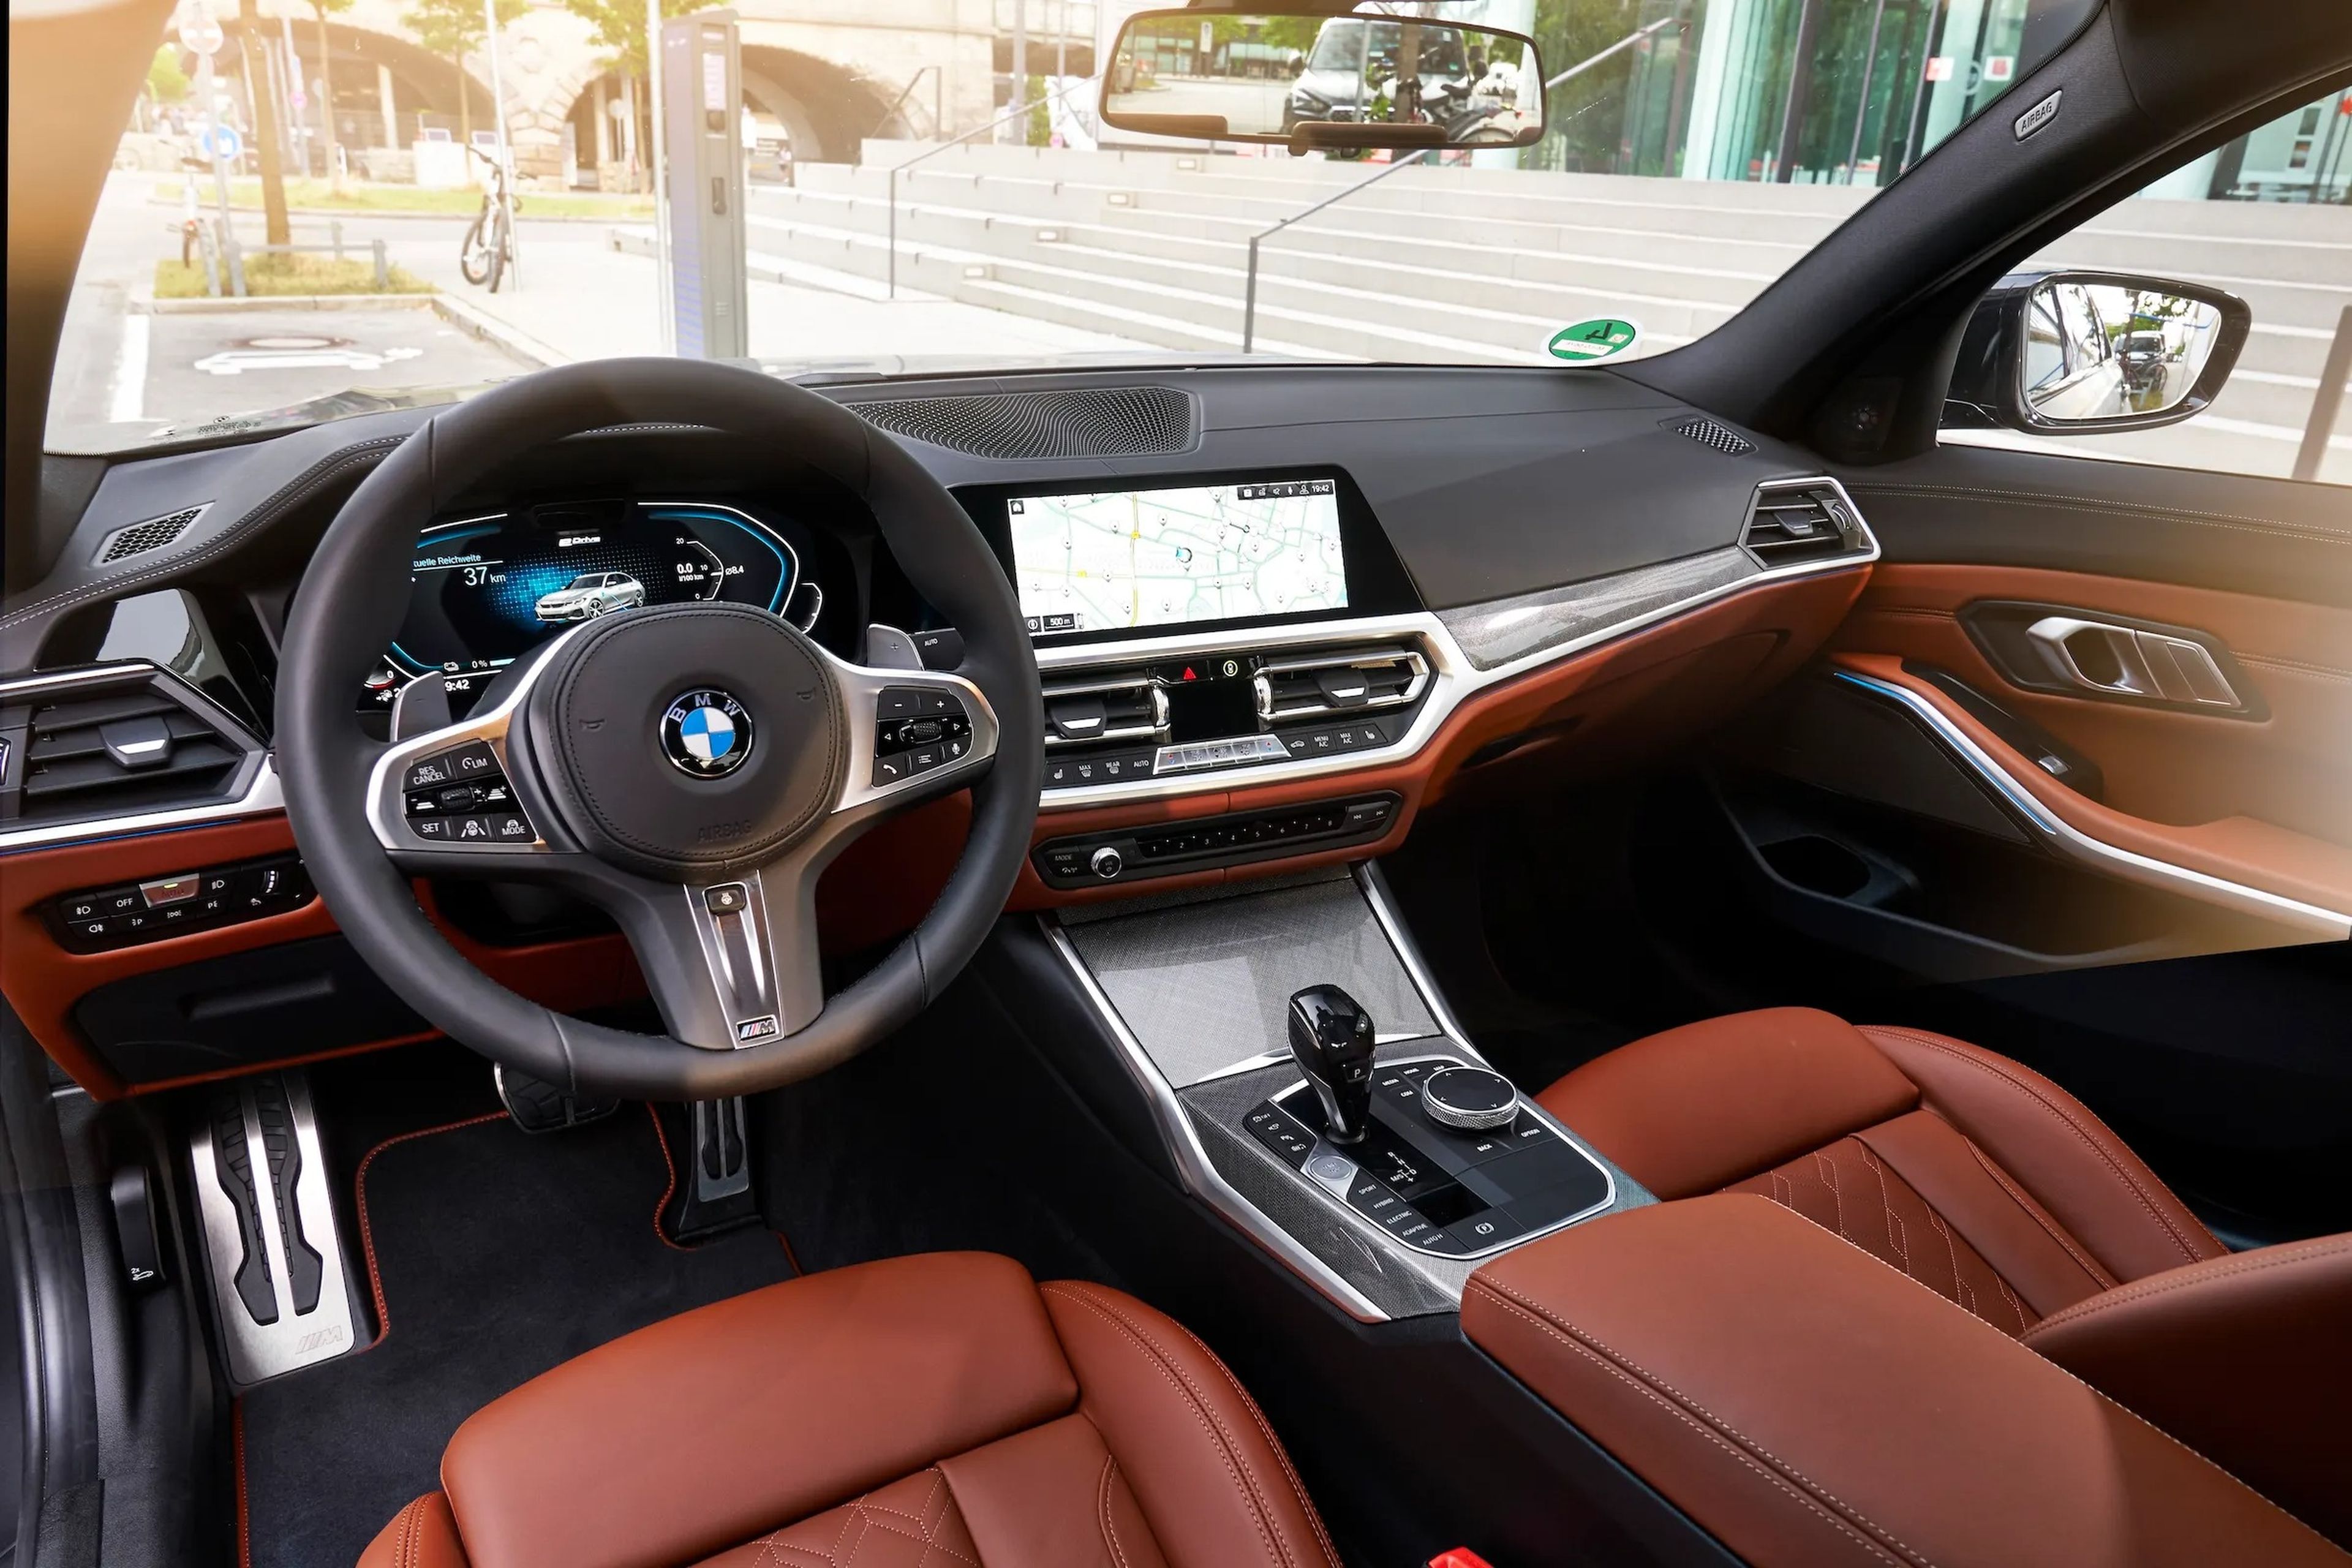 BMW ha dejado de fabricar varios modelos con pantallas táctiles para afrontar la escasez global de chips.